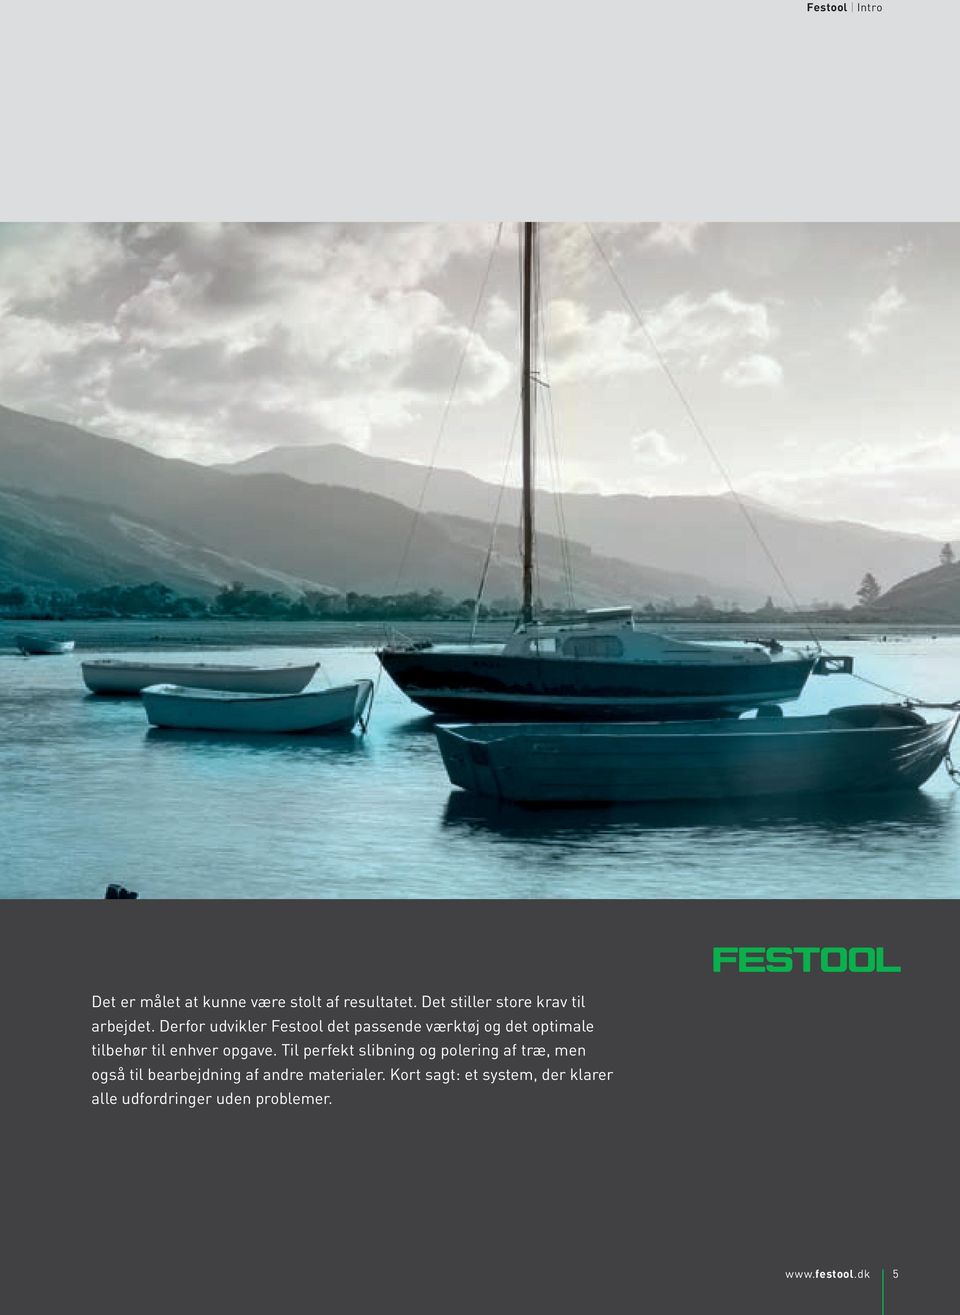 Derfor udvikler Festool det passende værktøj og det optimale tilbehør til enhver opgave.